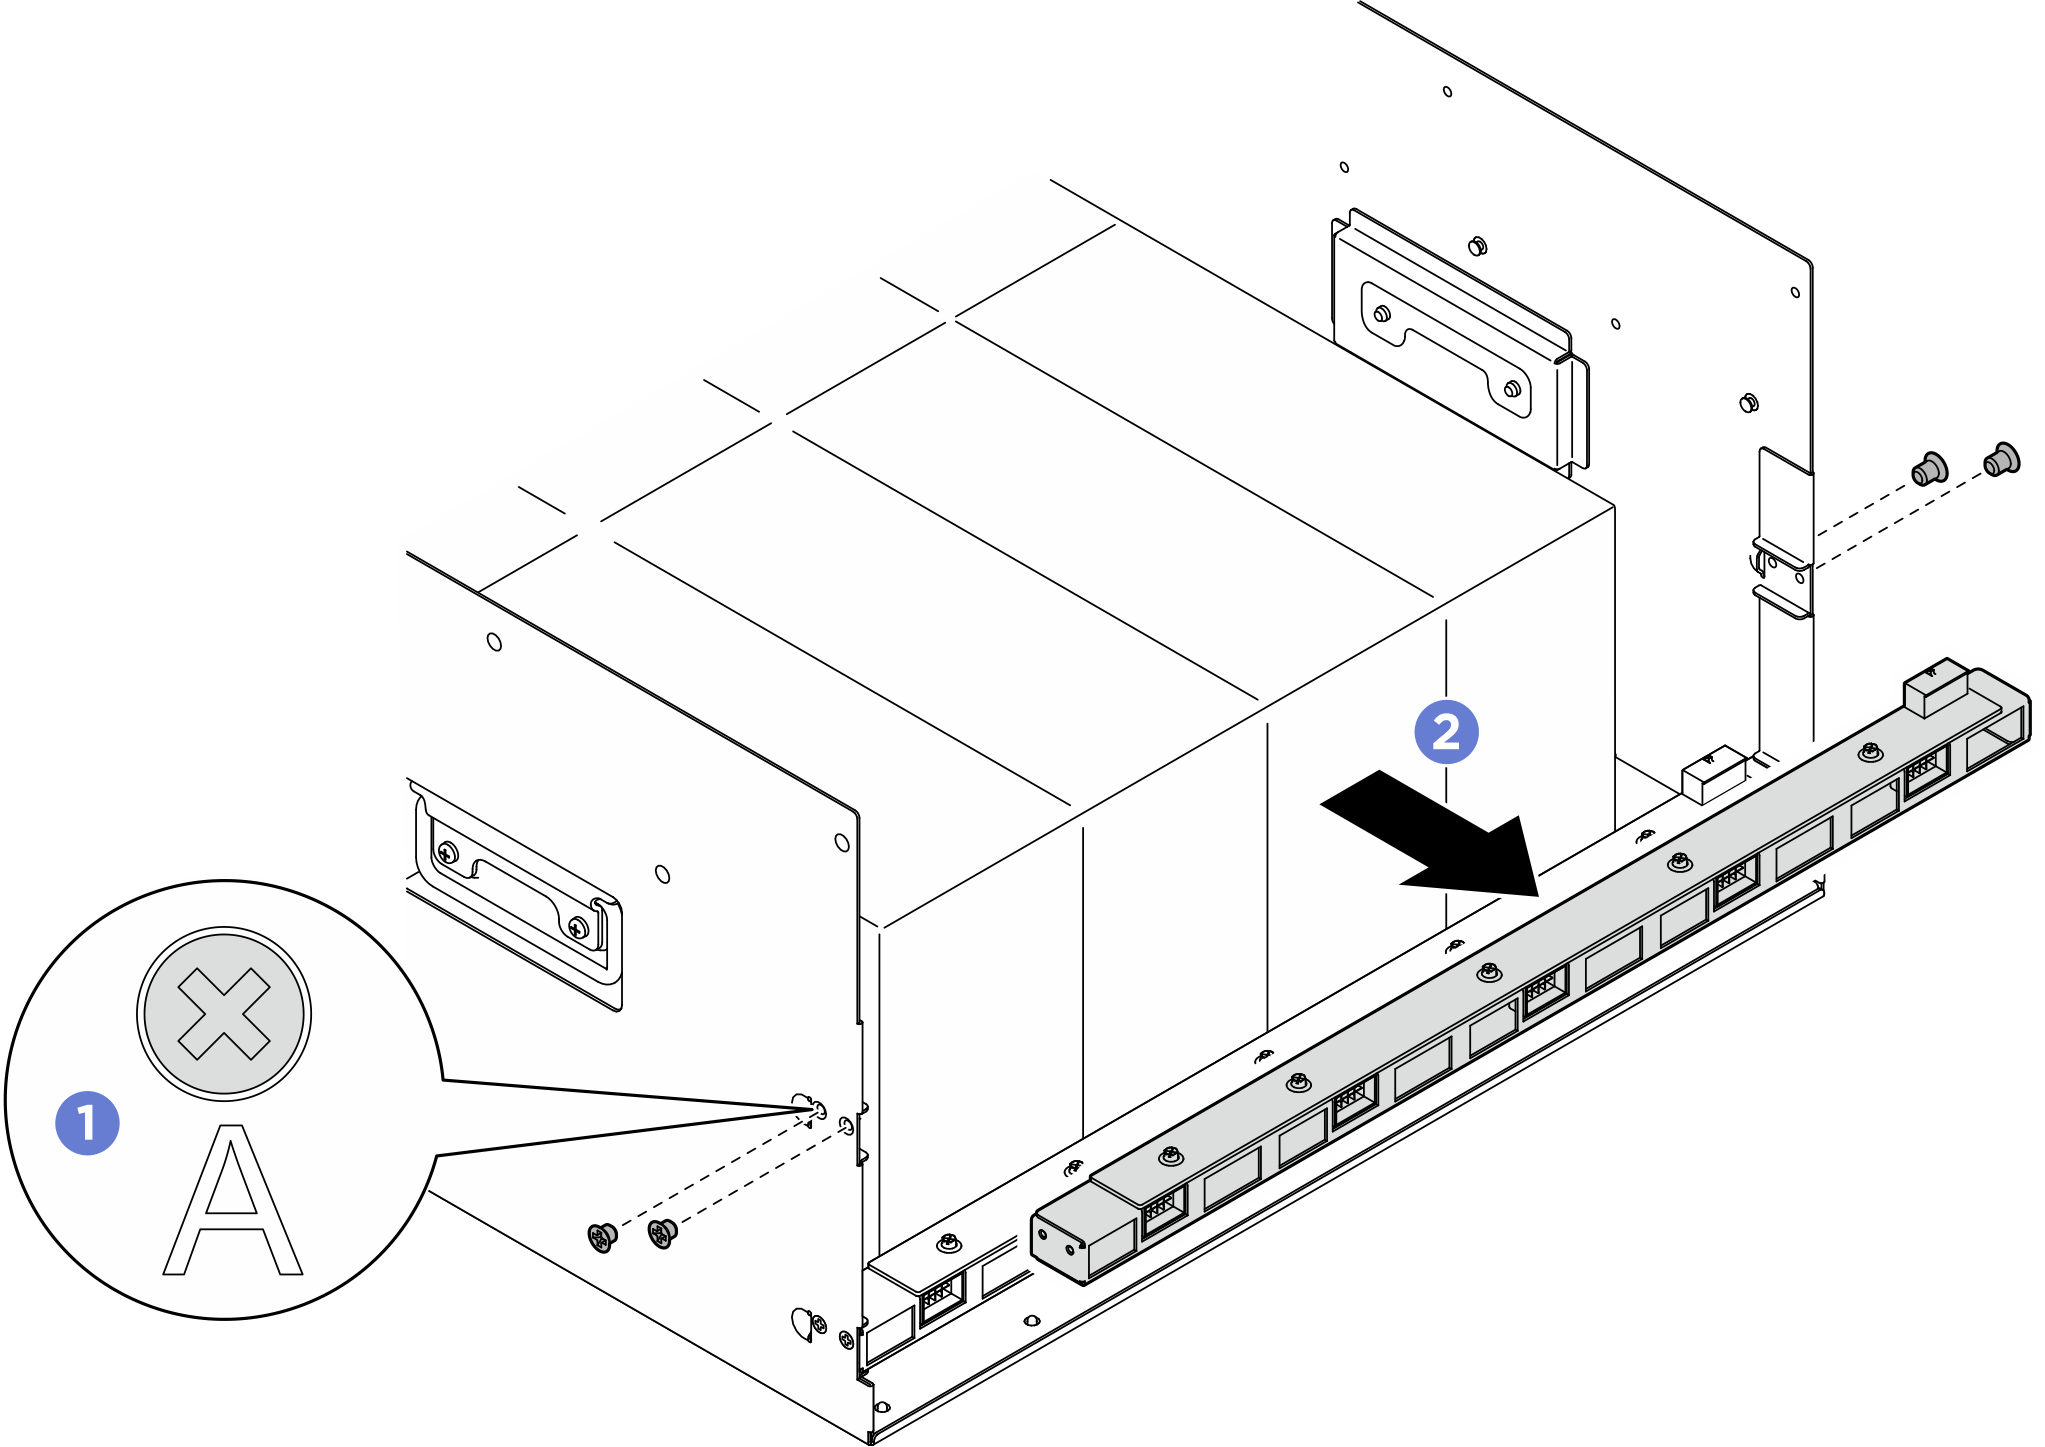 Rear fan control board module removal